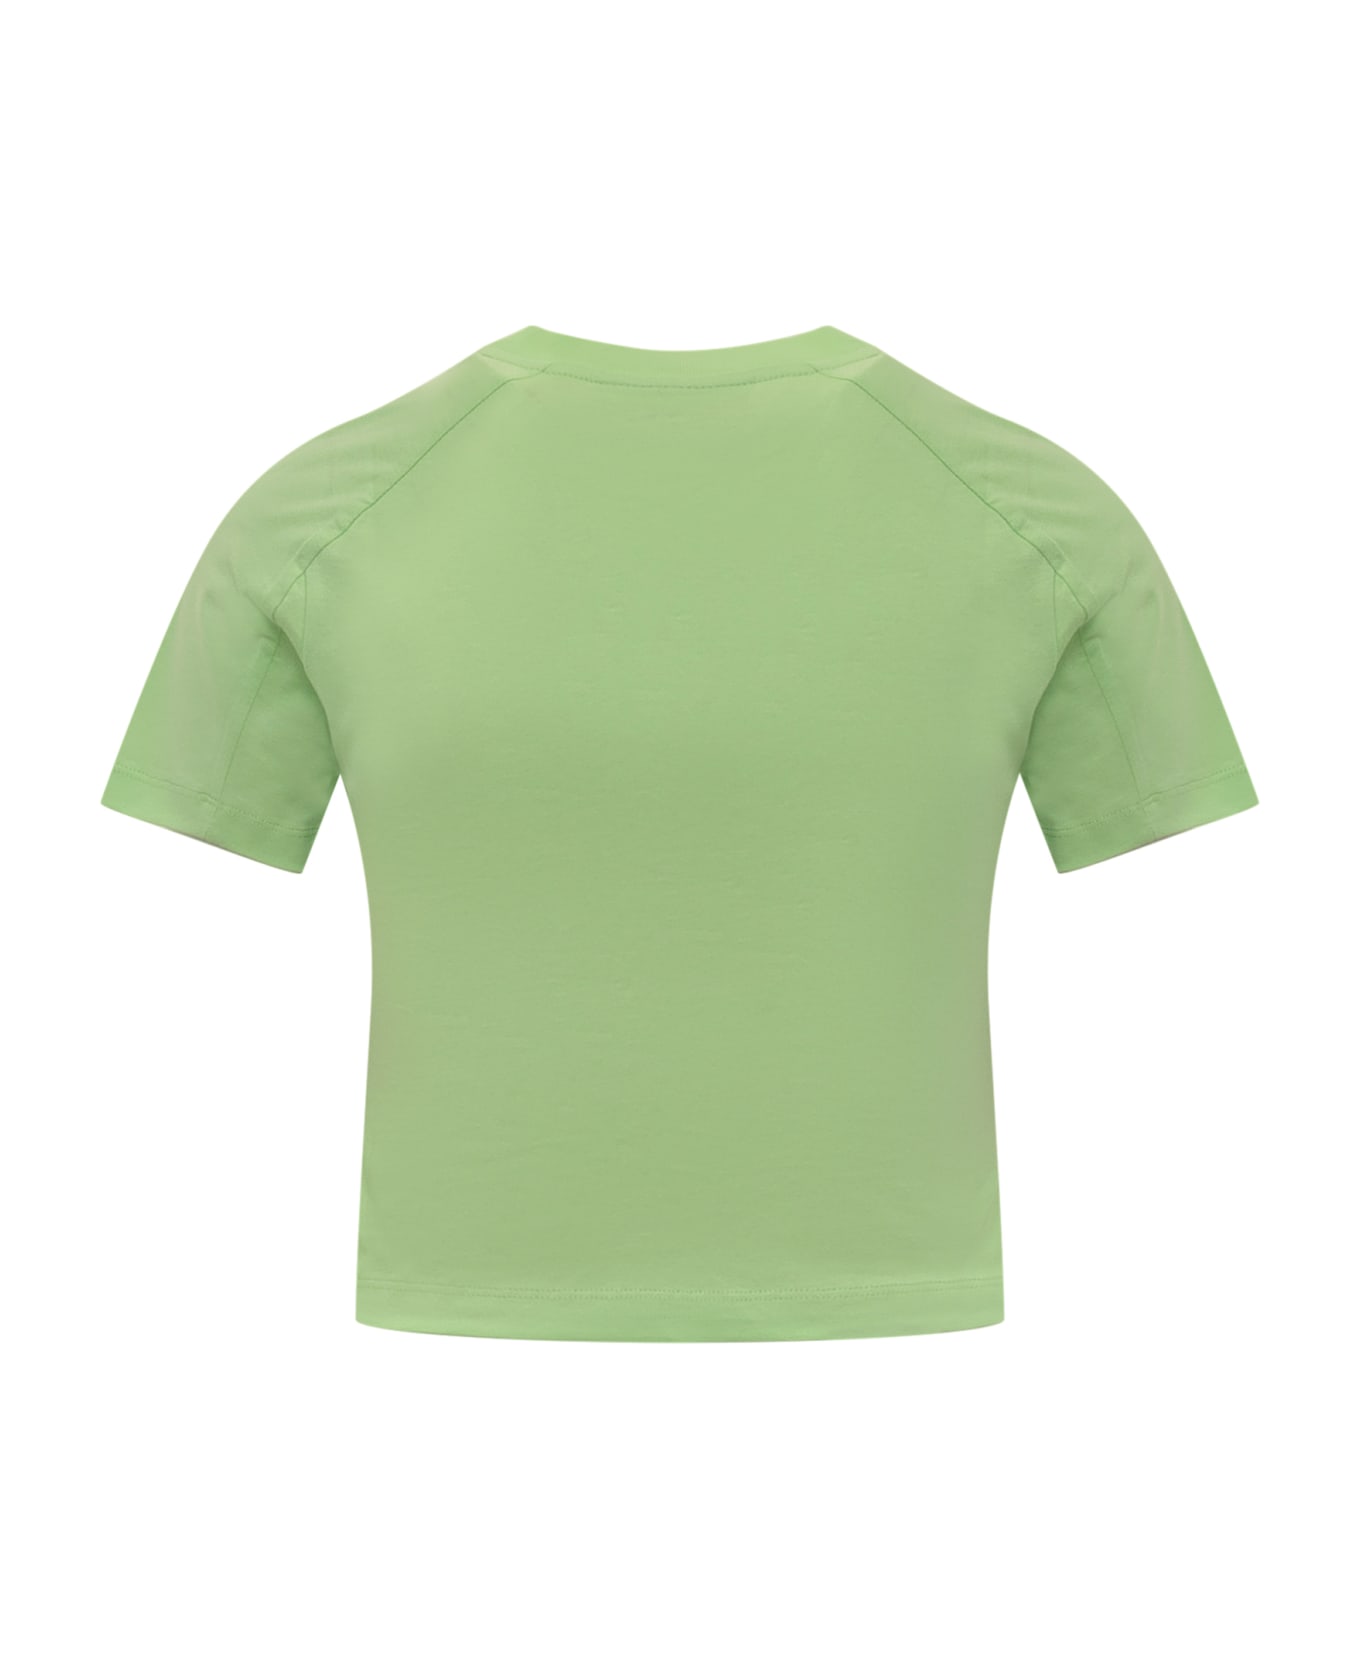 Chiara Ferragni Ferragni 602 T-shirt - Green